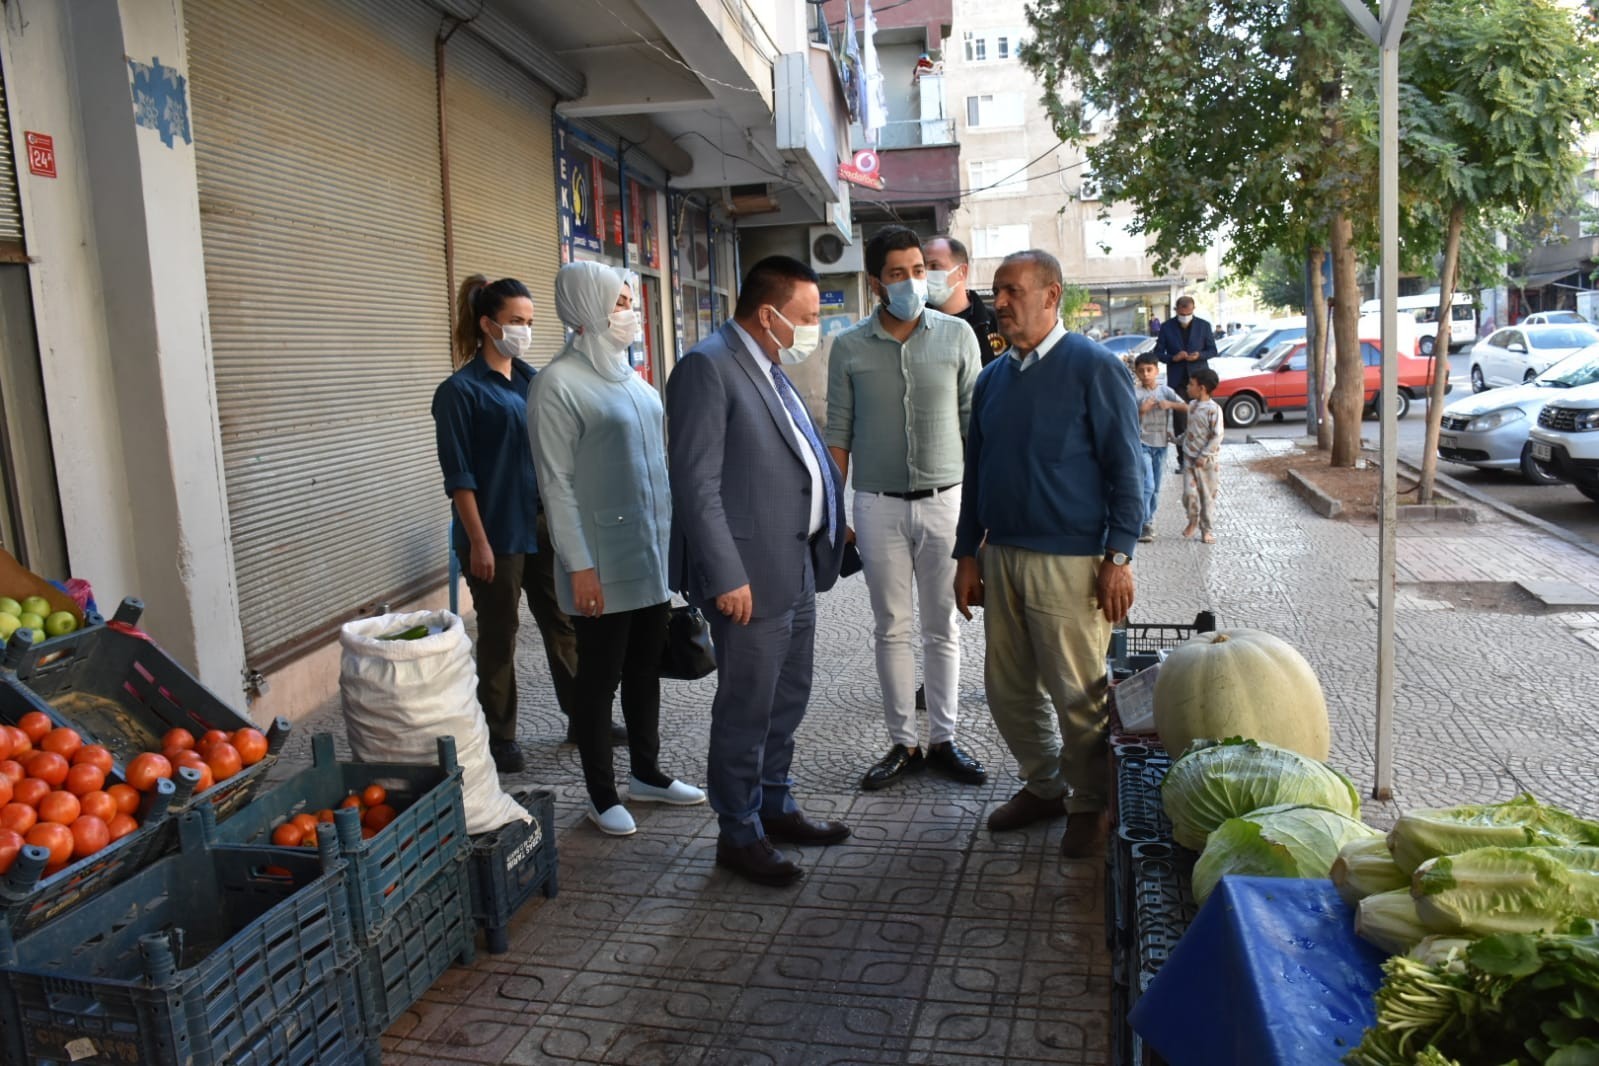 Hizmeti gönül belediyeciliği ile taçlandırıp halkın kalbine girdik #diyarbakir